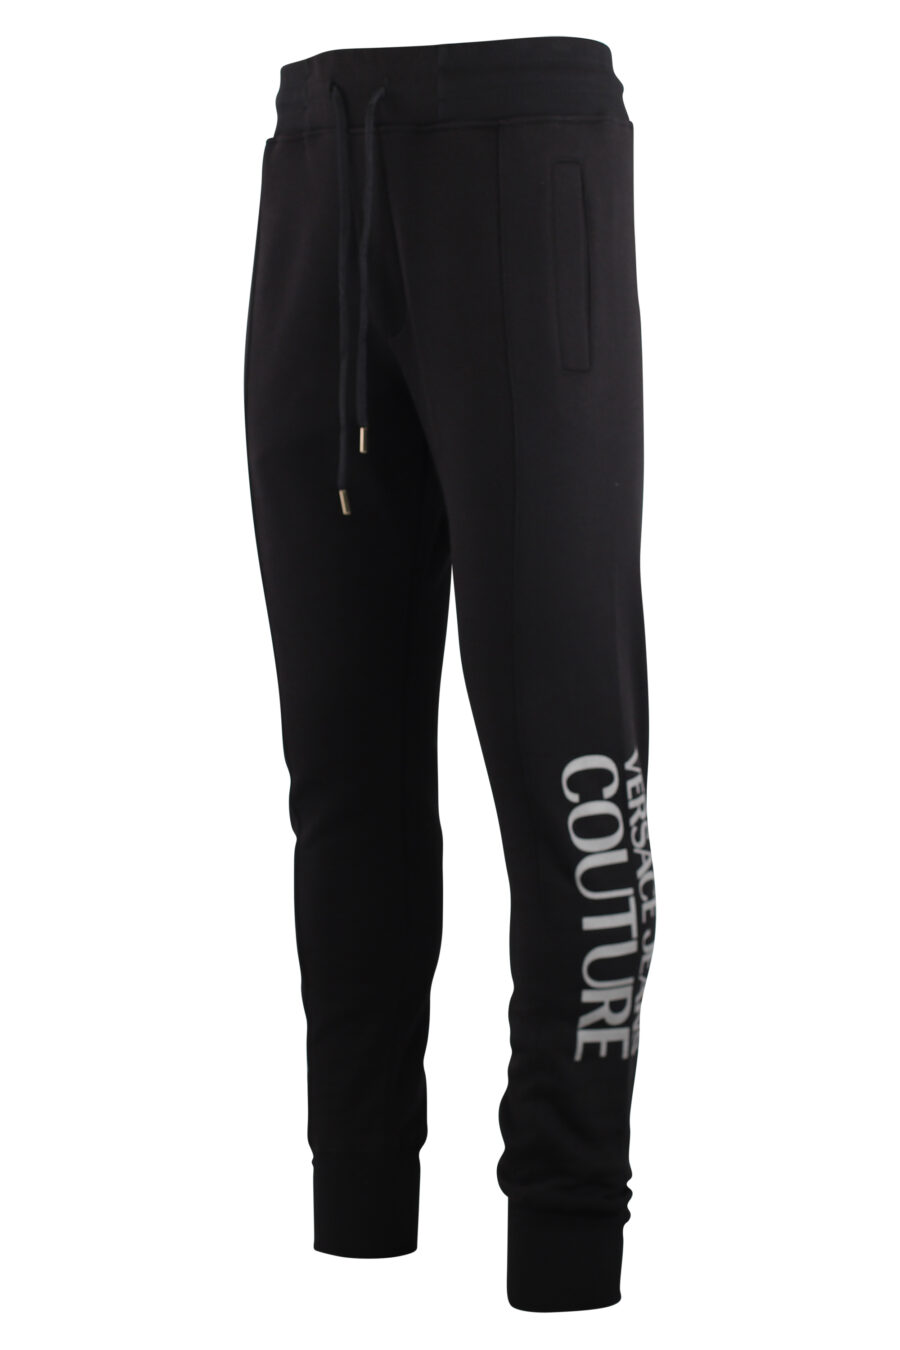 Pantalón de chándal negro con logo vertical plateado - IMG 7502